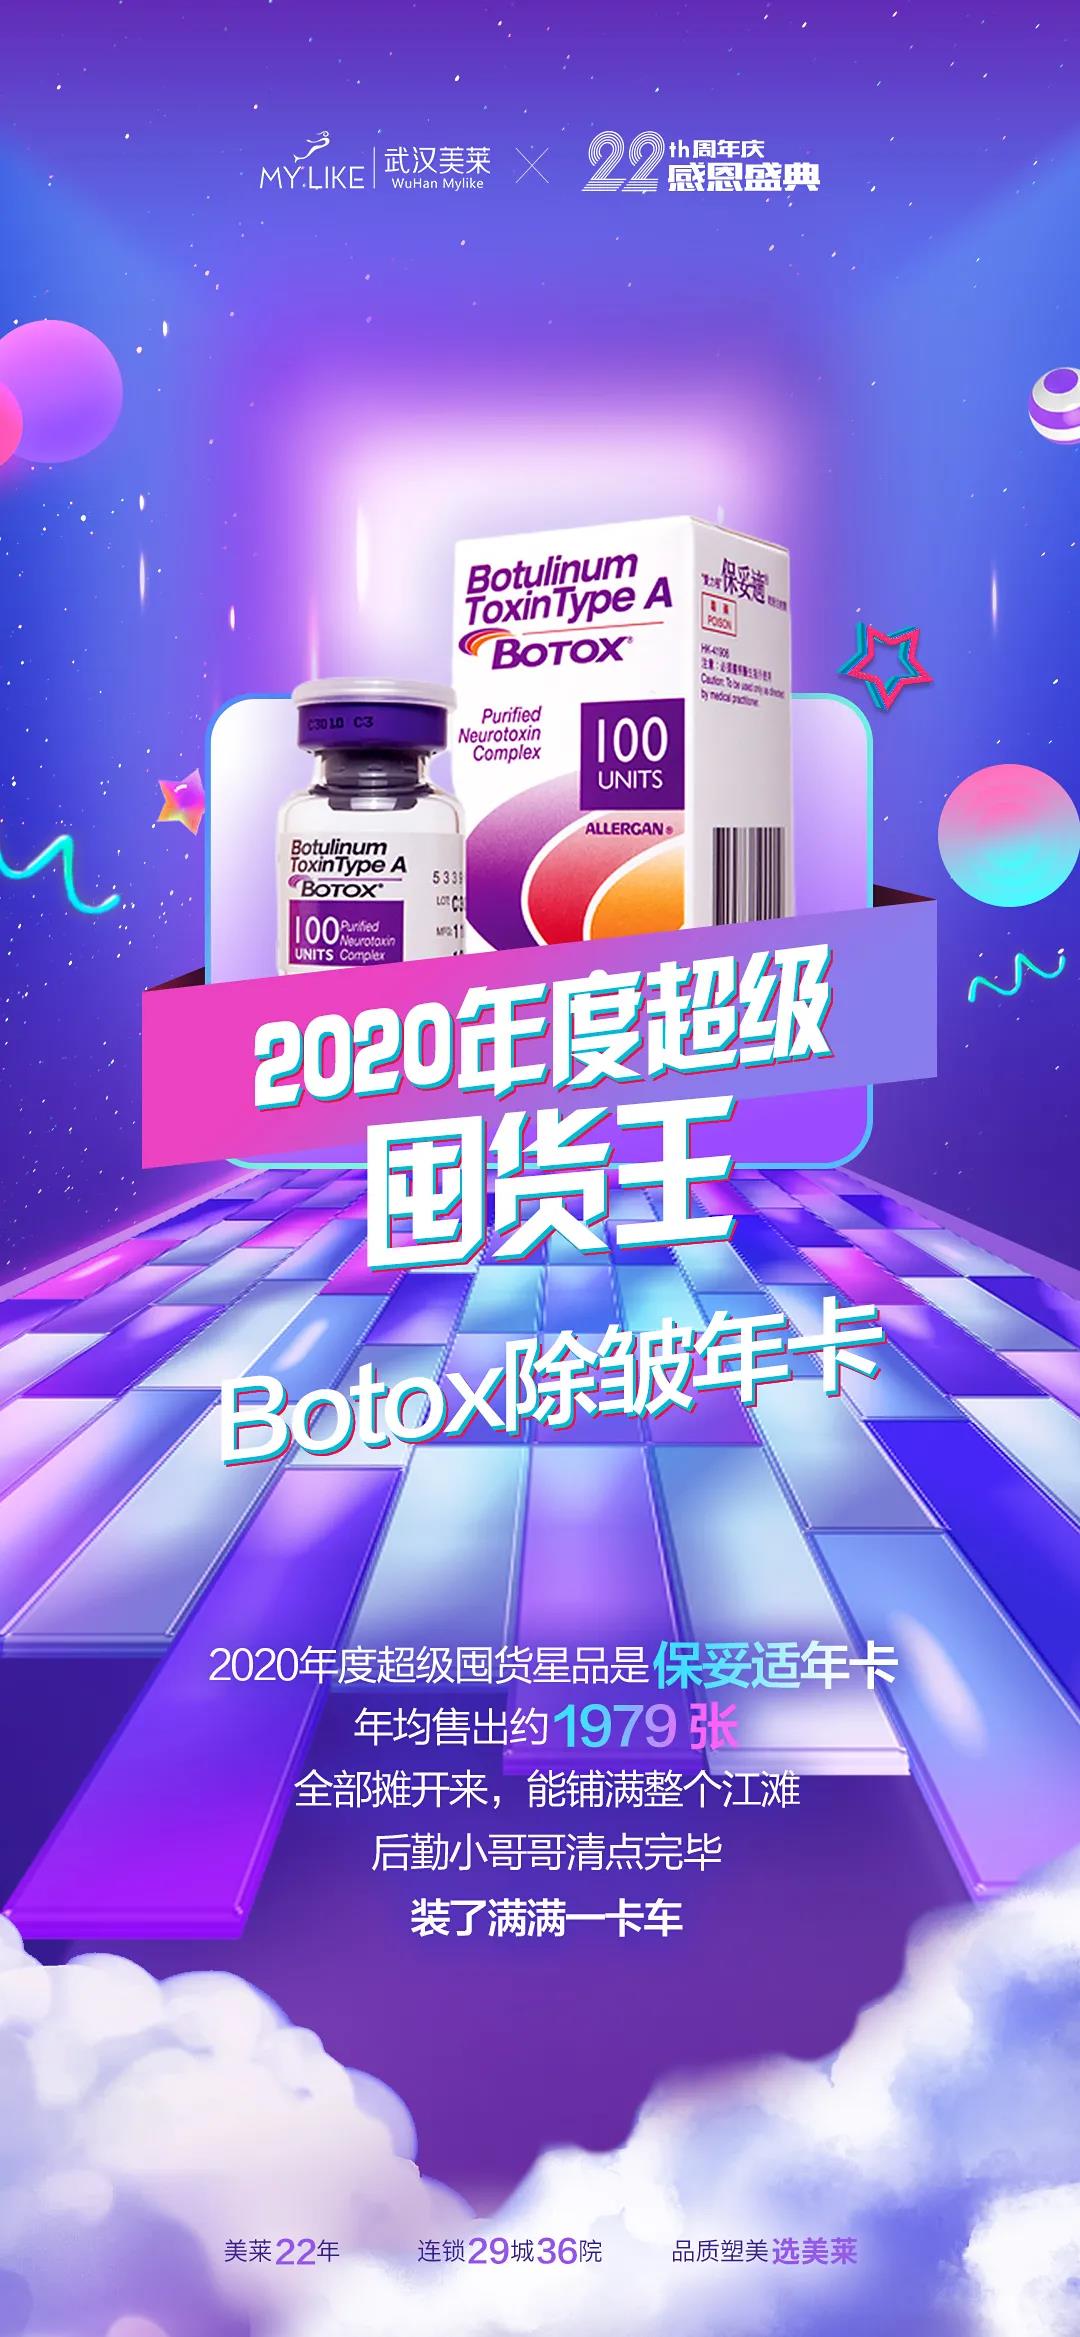 武汉美莱公布了“2020的医美榜单盘点”最新榜单